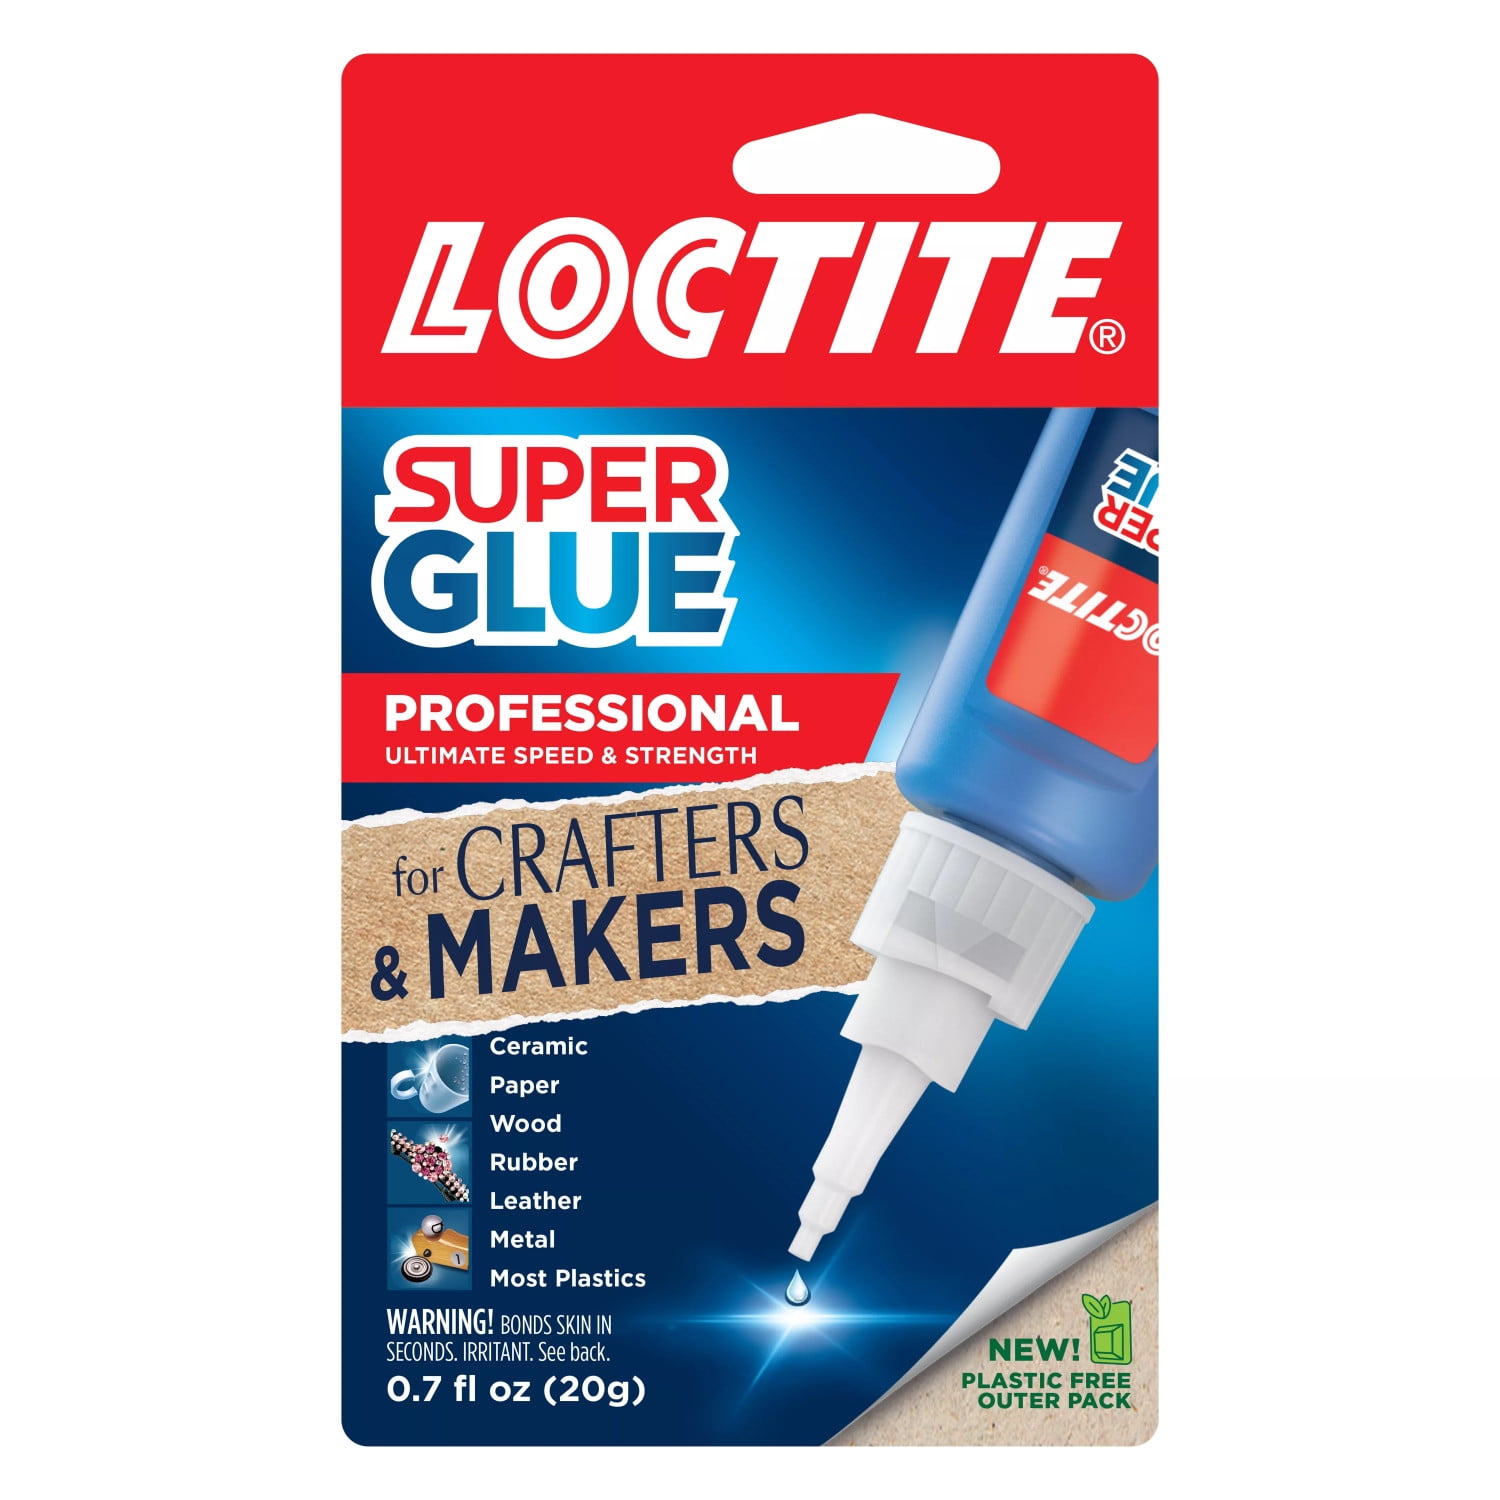 Loctite Liquid Professional Super Glue Bottle - 0.7 oz